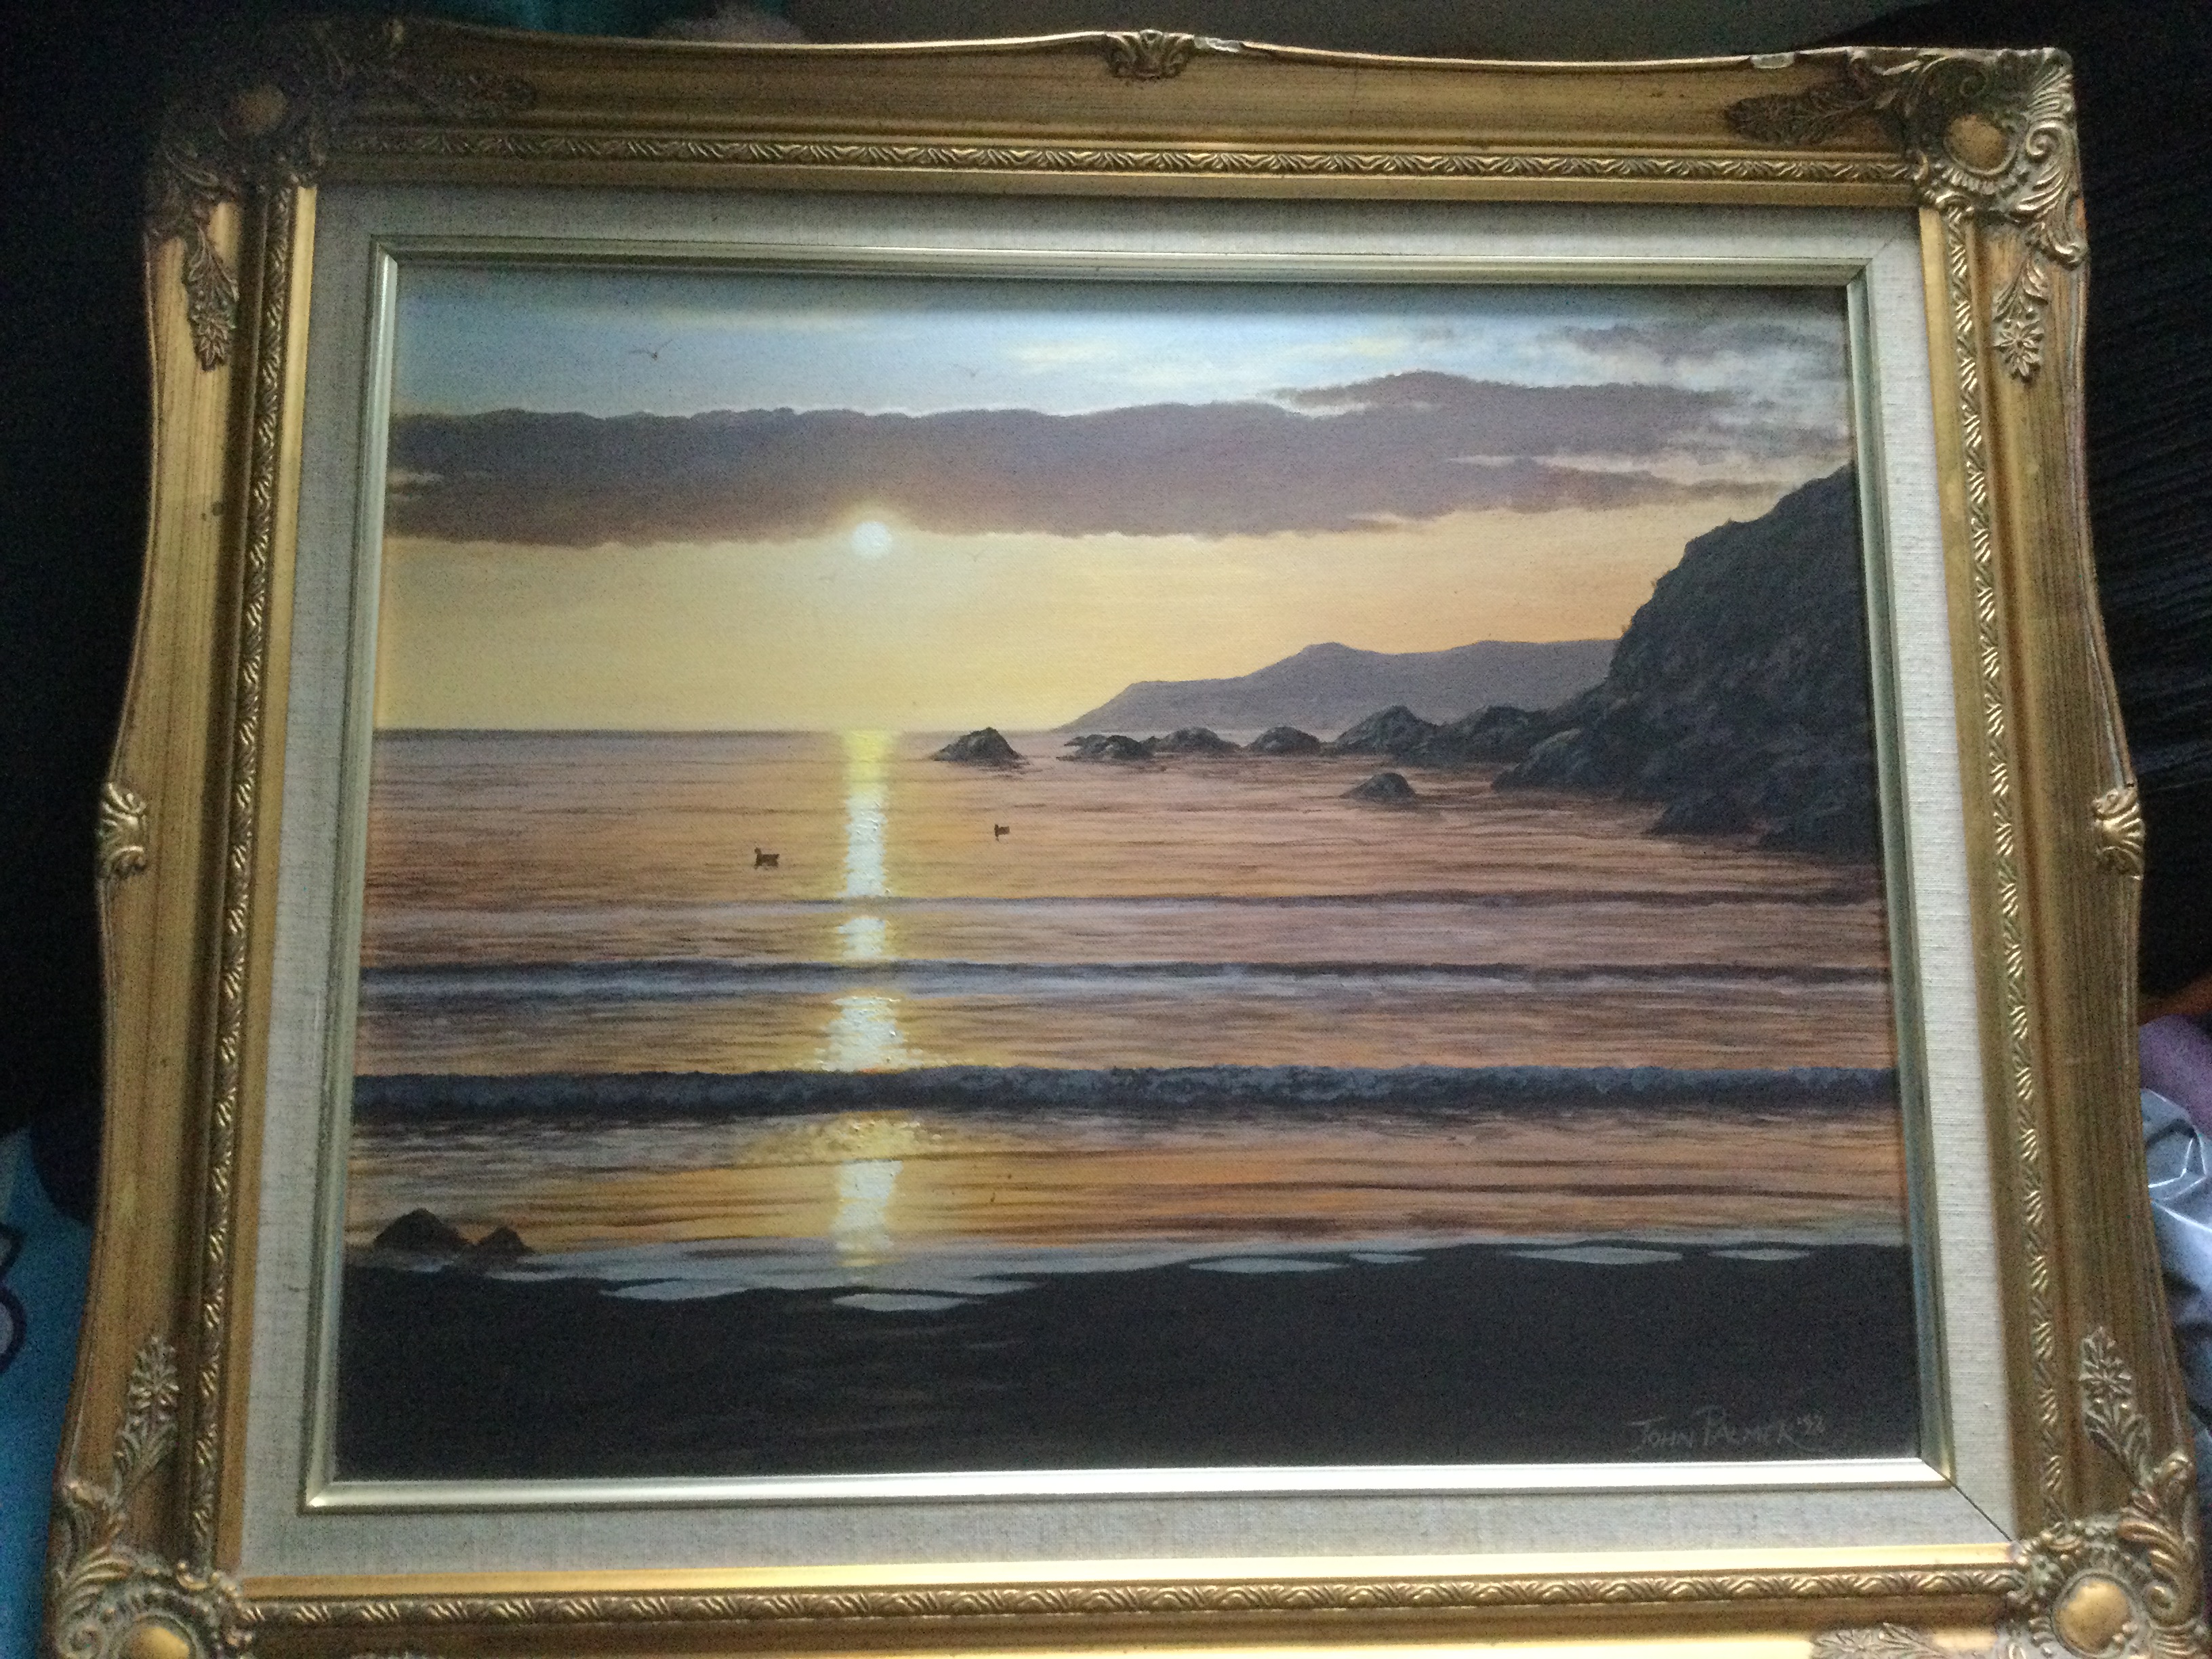 Sunset Seascape by John Palmer